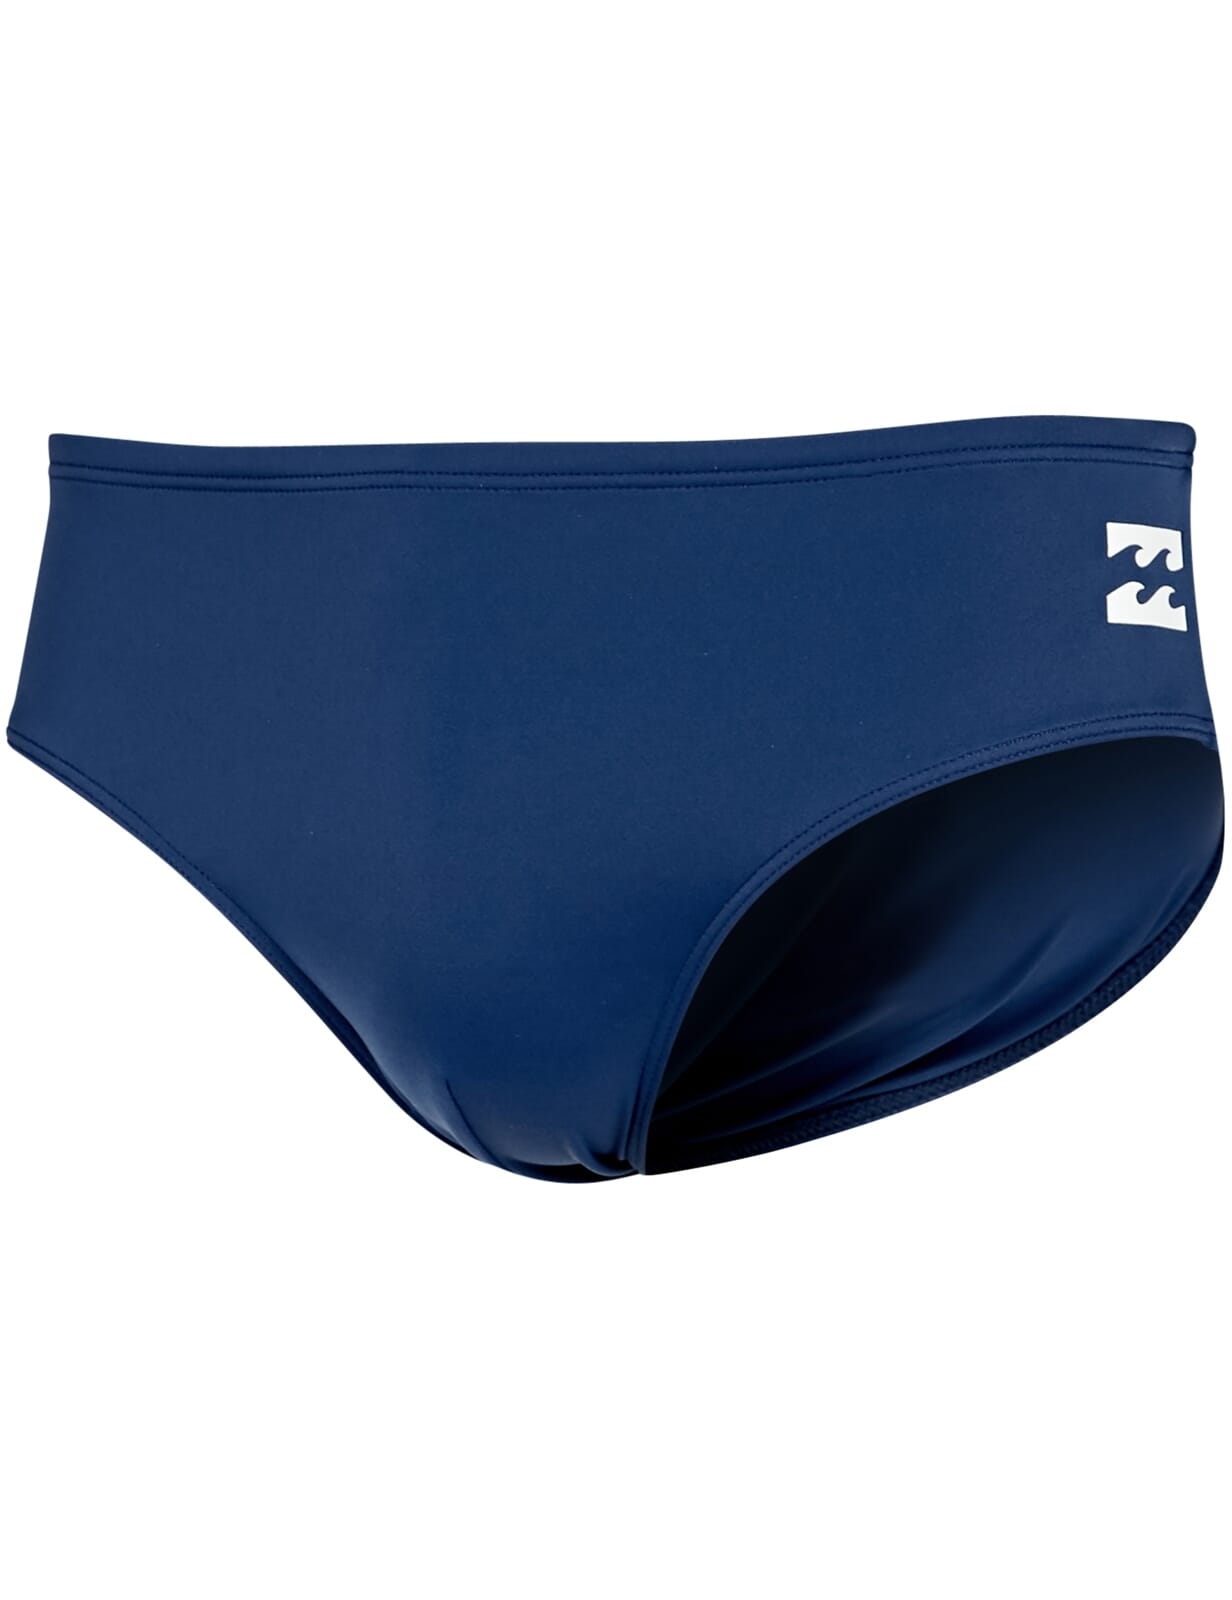 BNWT Billabong Fontana Swimwear in Blue Denim S/M/L/XL 